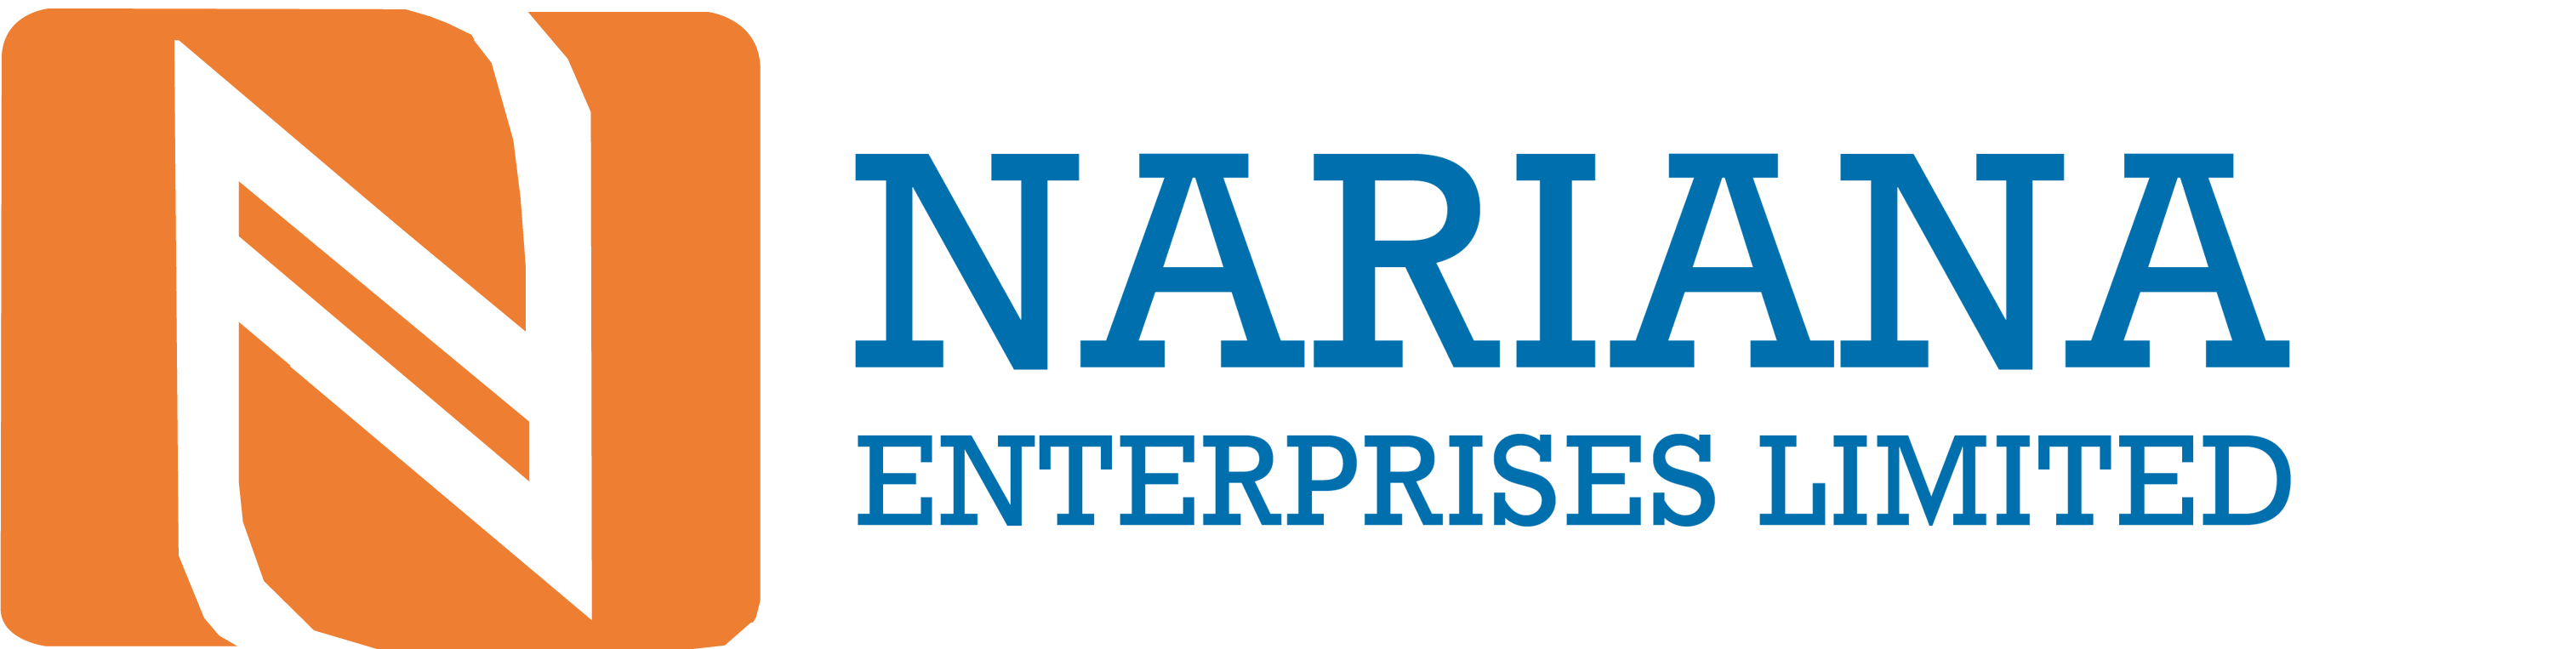 Nariana Enterprises Limited